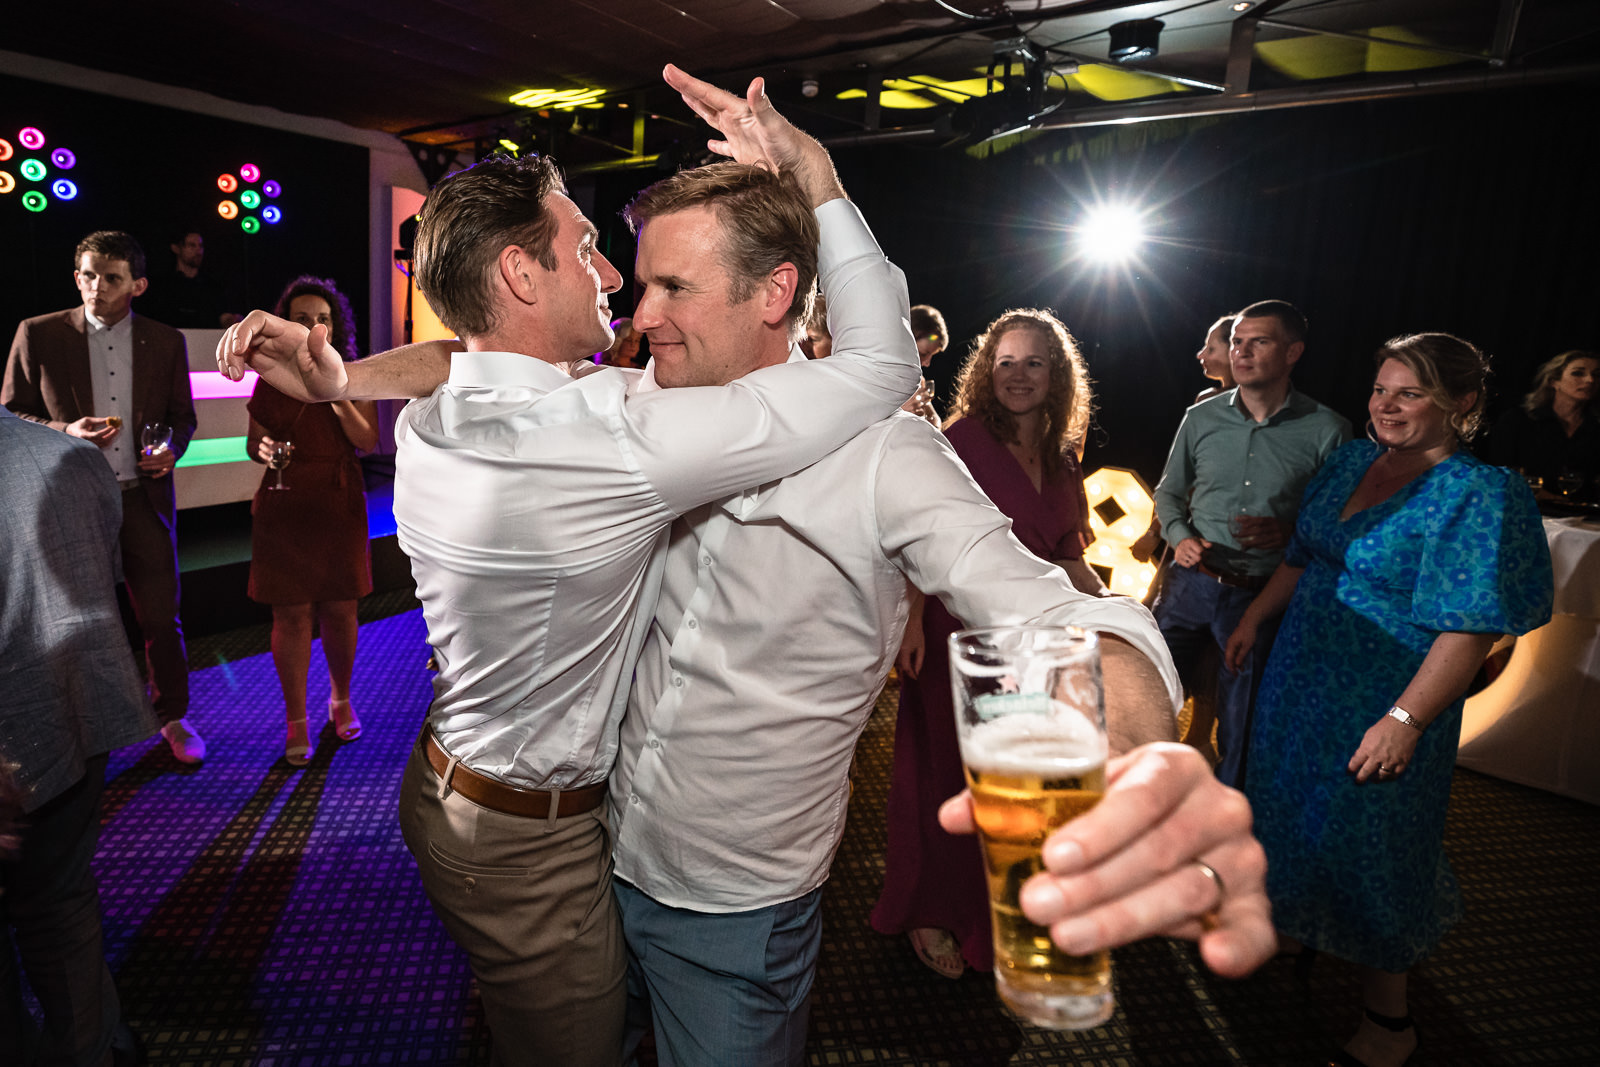 twee mannen gaan los op de dansvloer tijdens huwelijks feest Trouwfotograaf Den Haag